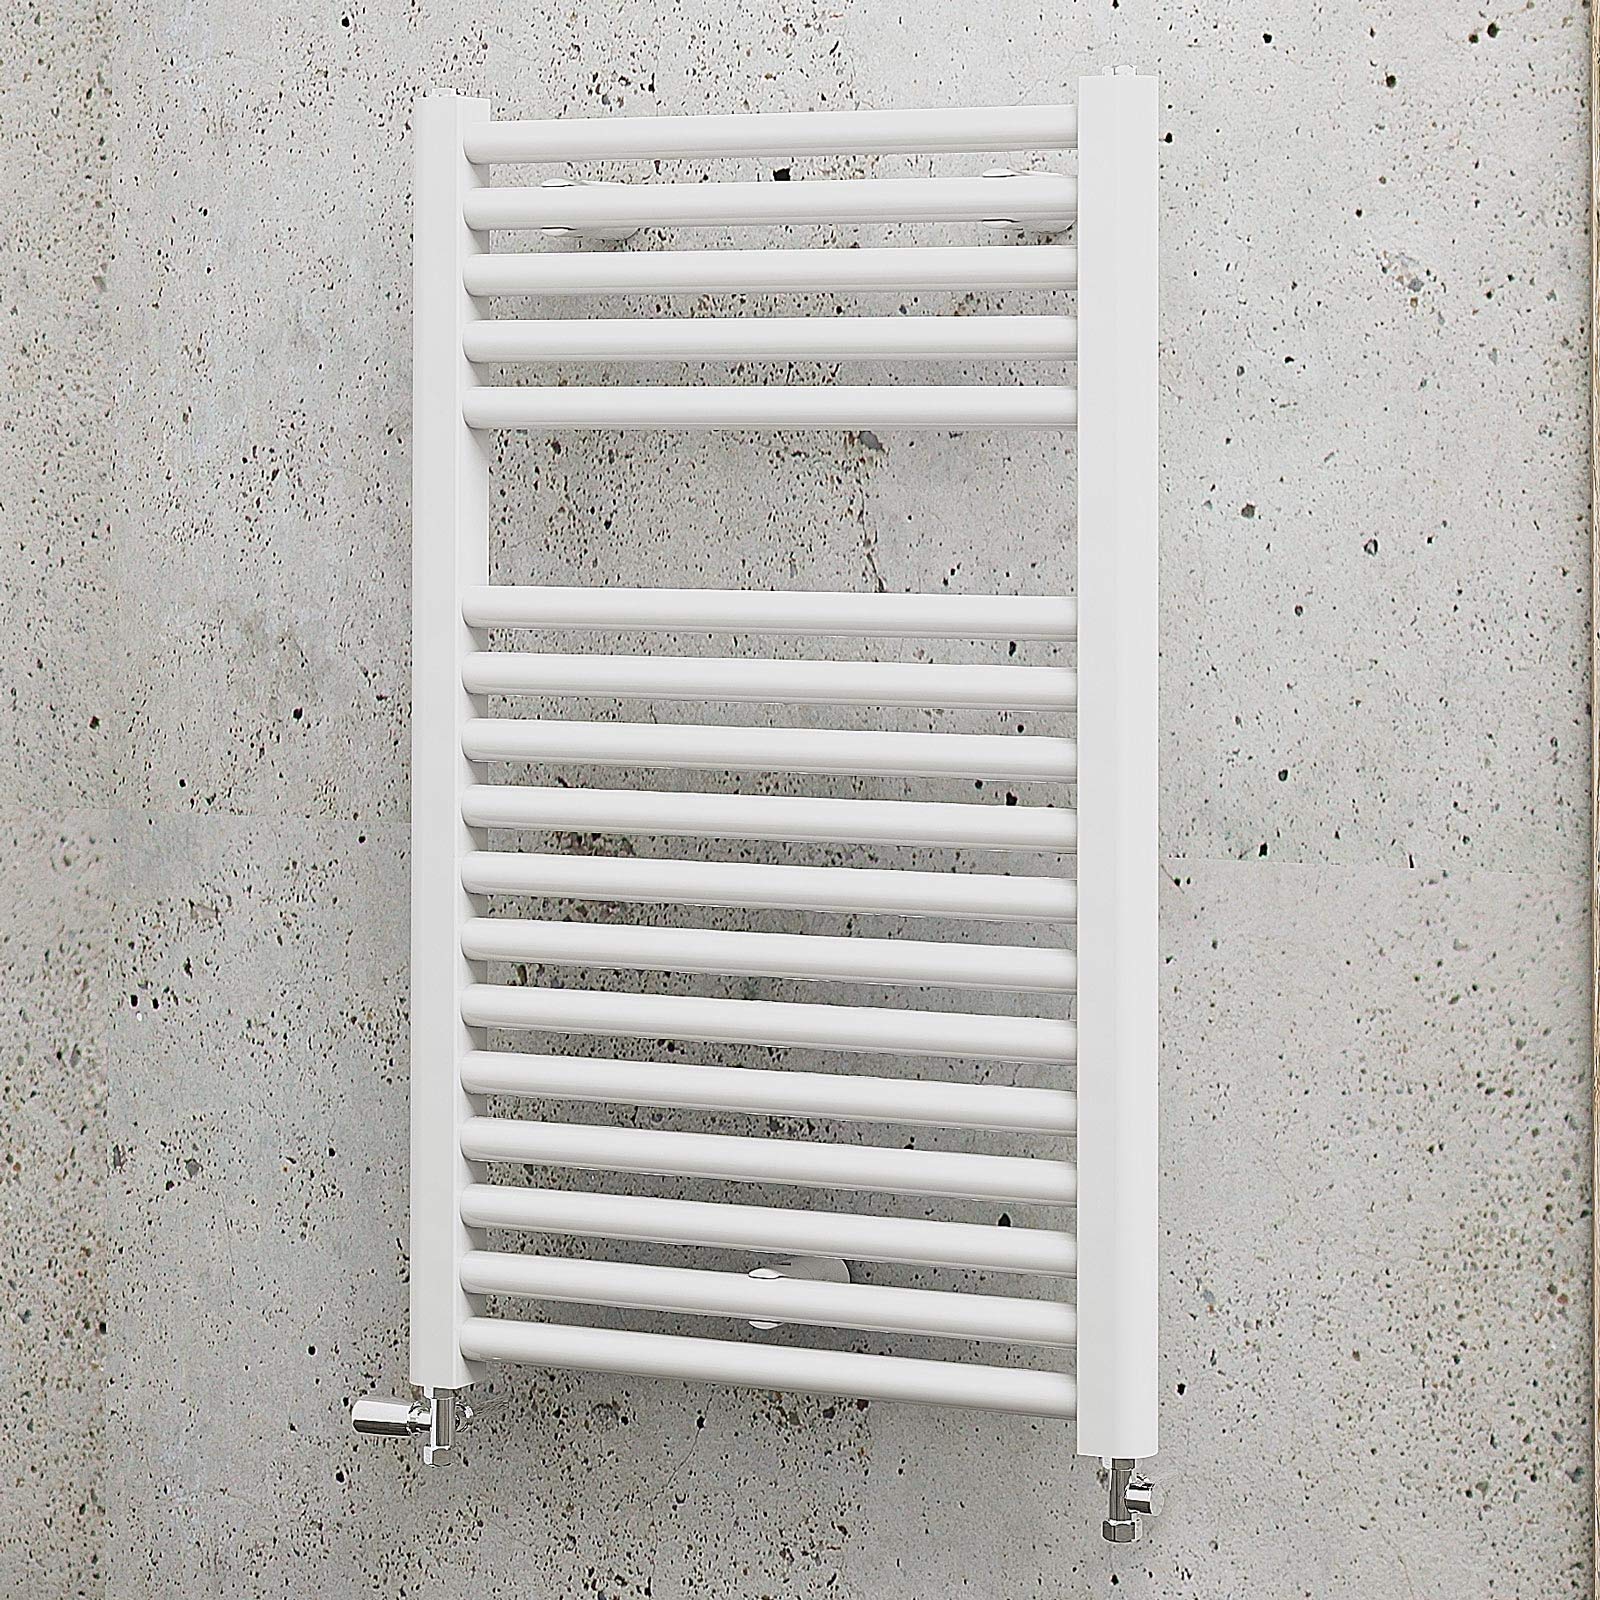 Schulte Badheizkörper München, 77 x 50 cm, 451 Watt Leistung, Anschluss unten, alpinweiß, Designheizkörper, EP07650 04